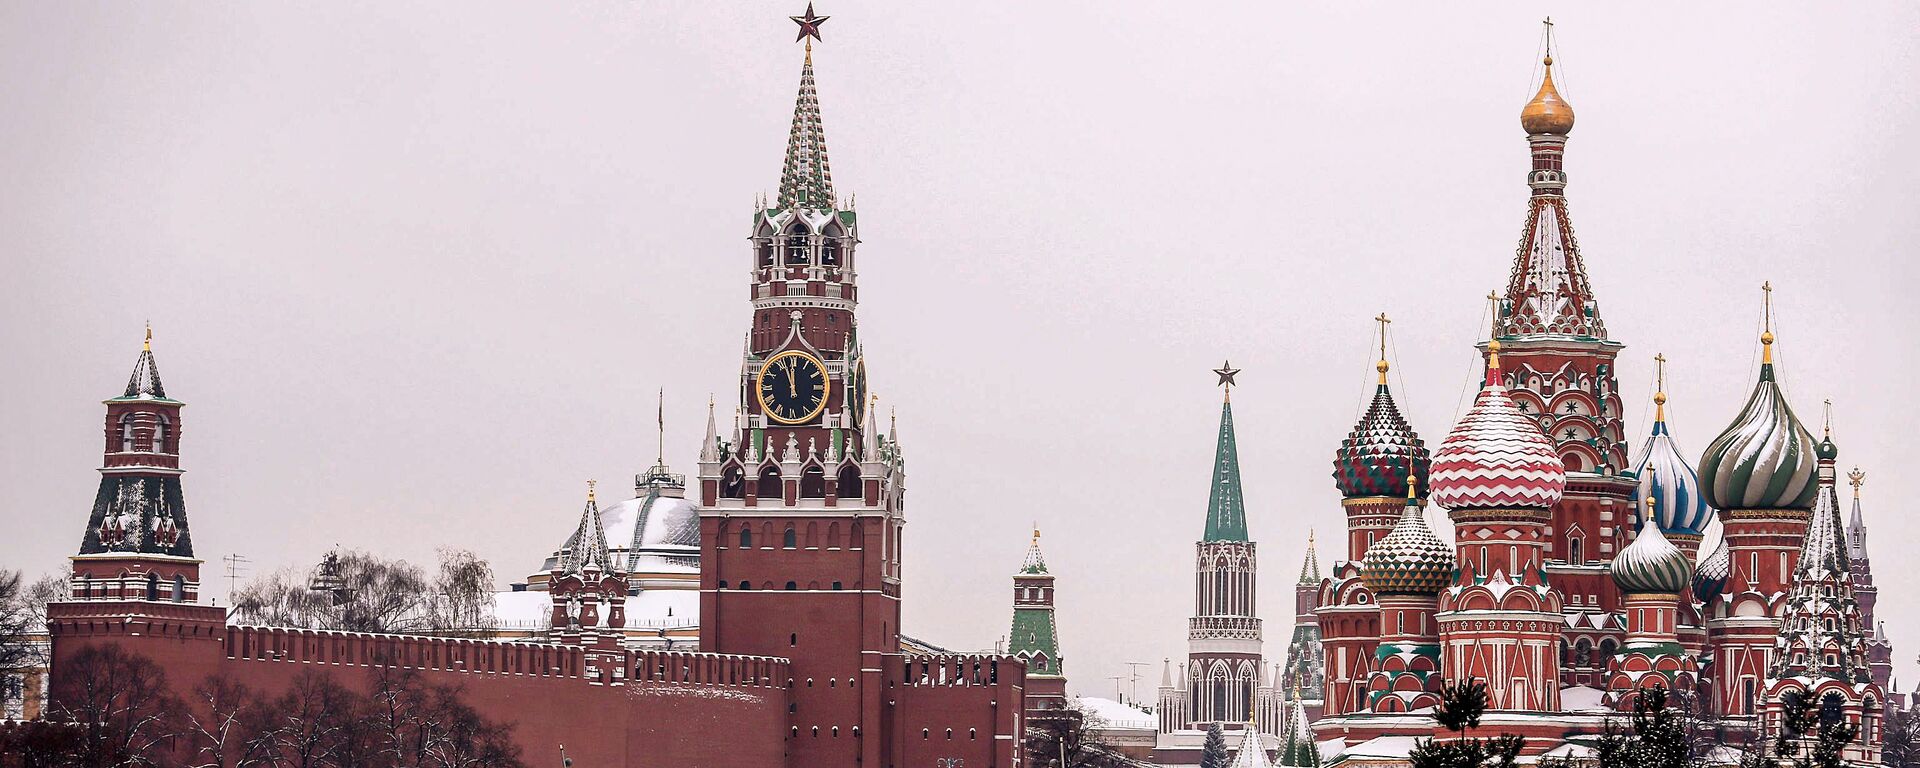 Вид на Покровский собор и Спасскую башню Московского Кремля - Sputnik Lietuva, 1920, 30.01.2021